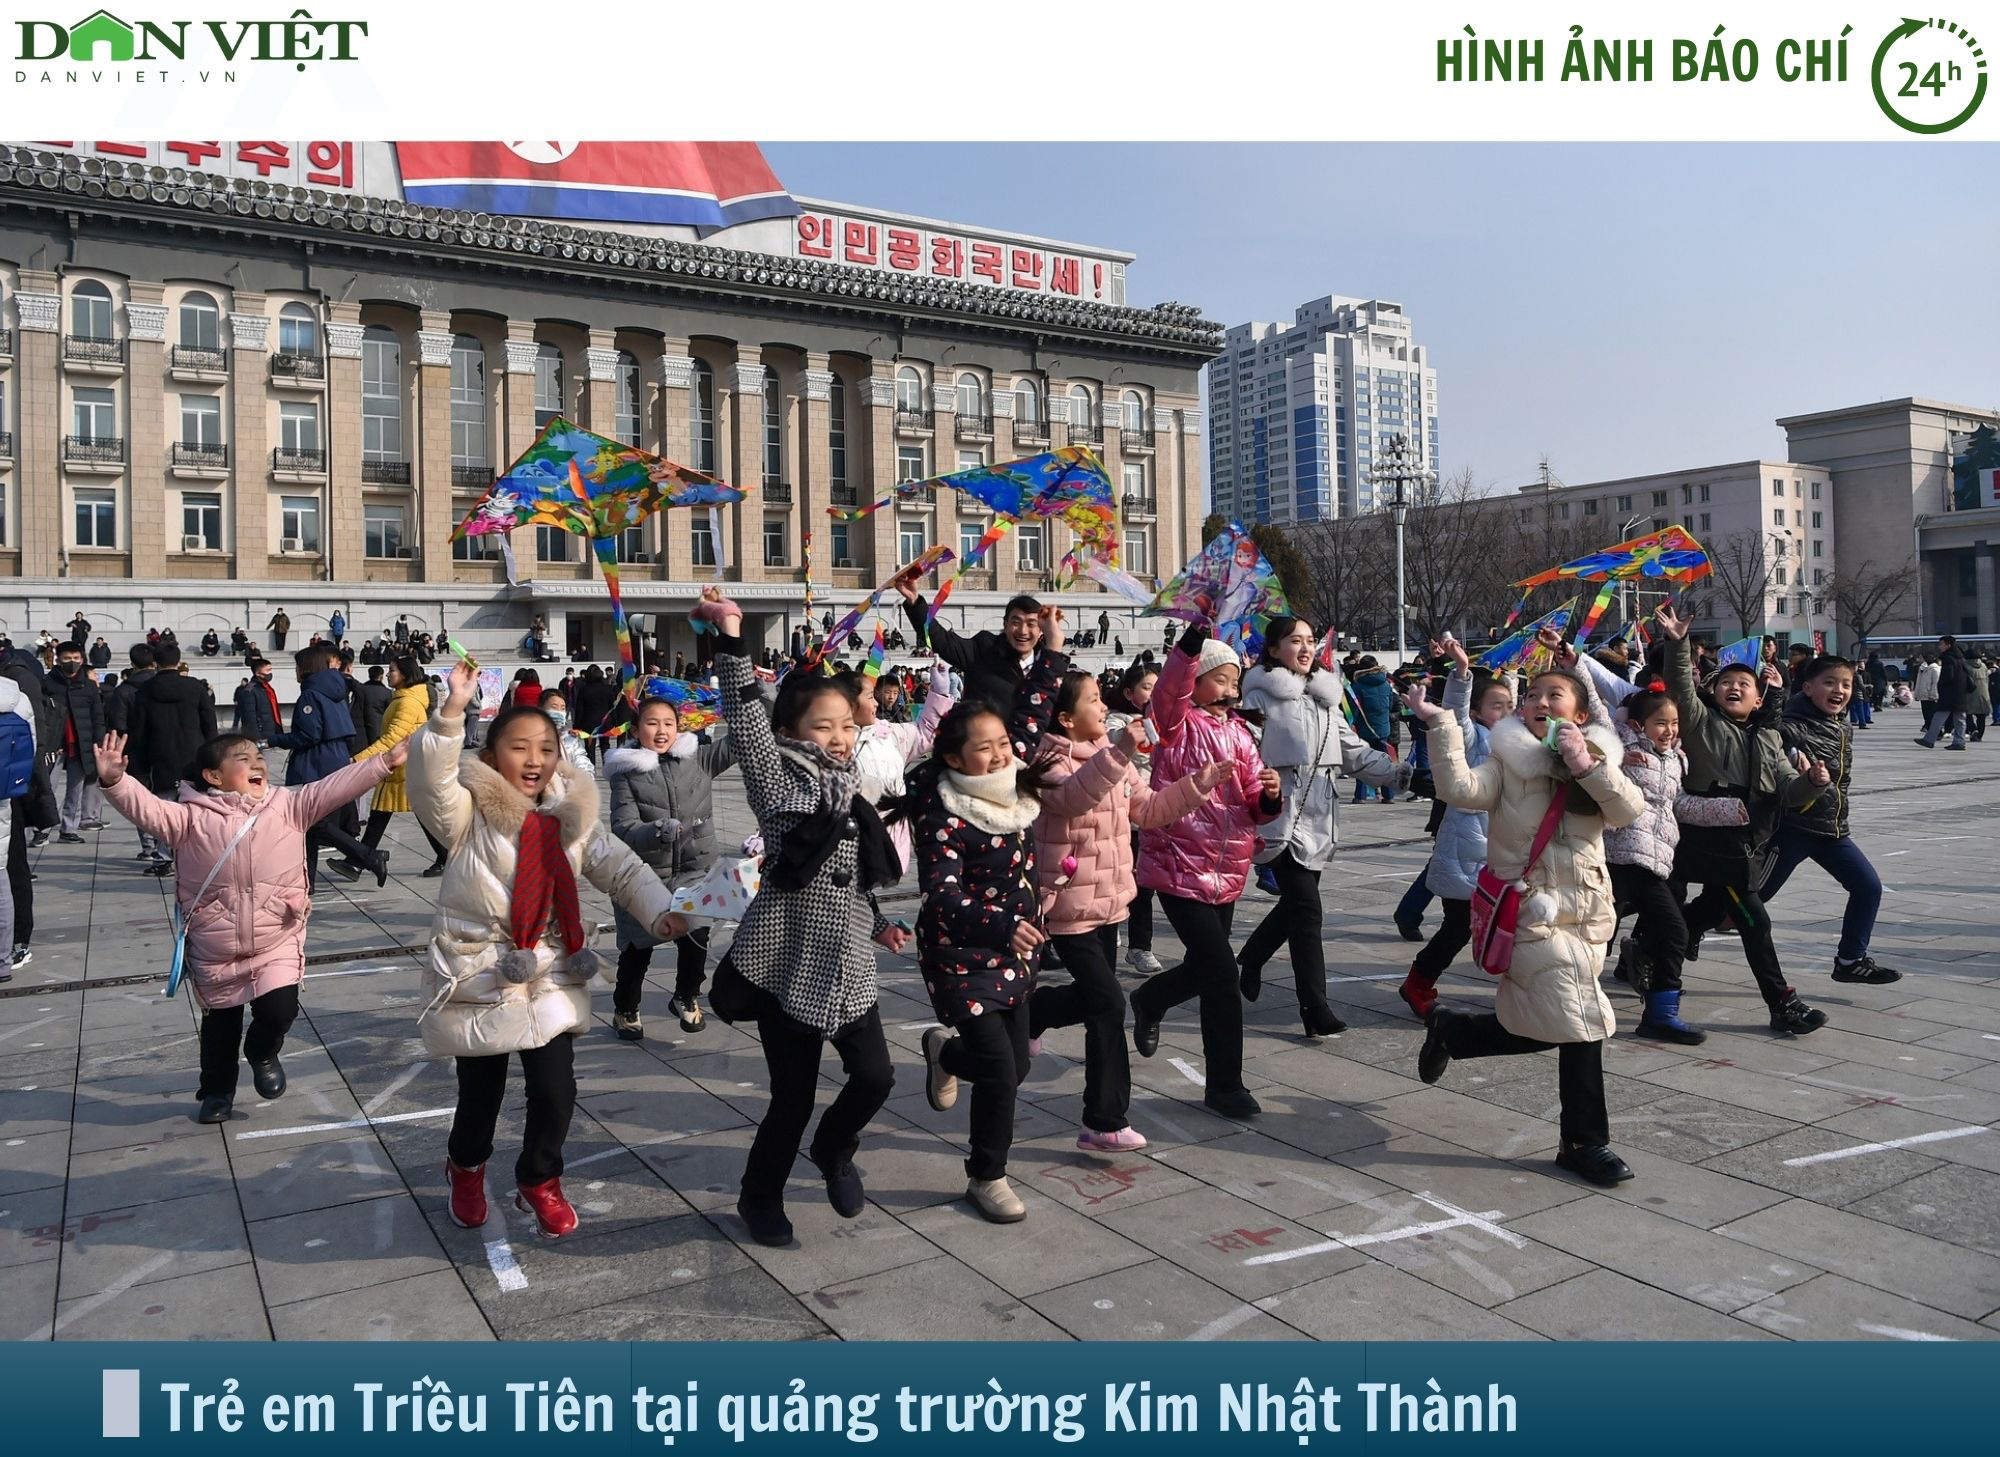 Hình ảnh báo chí 24h: Người Triều Tiên vui chơi ngày Tết Nguyên đán- Ảnh 1.